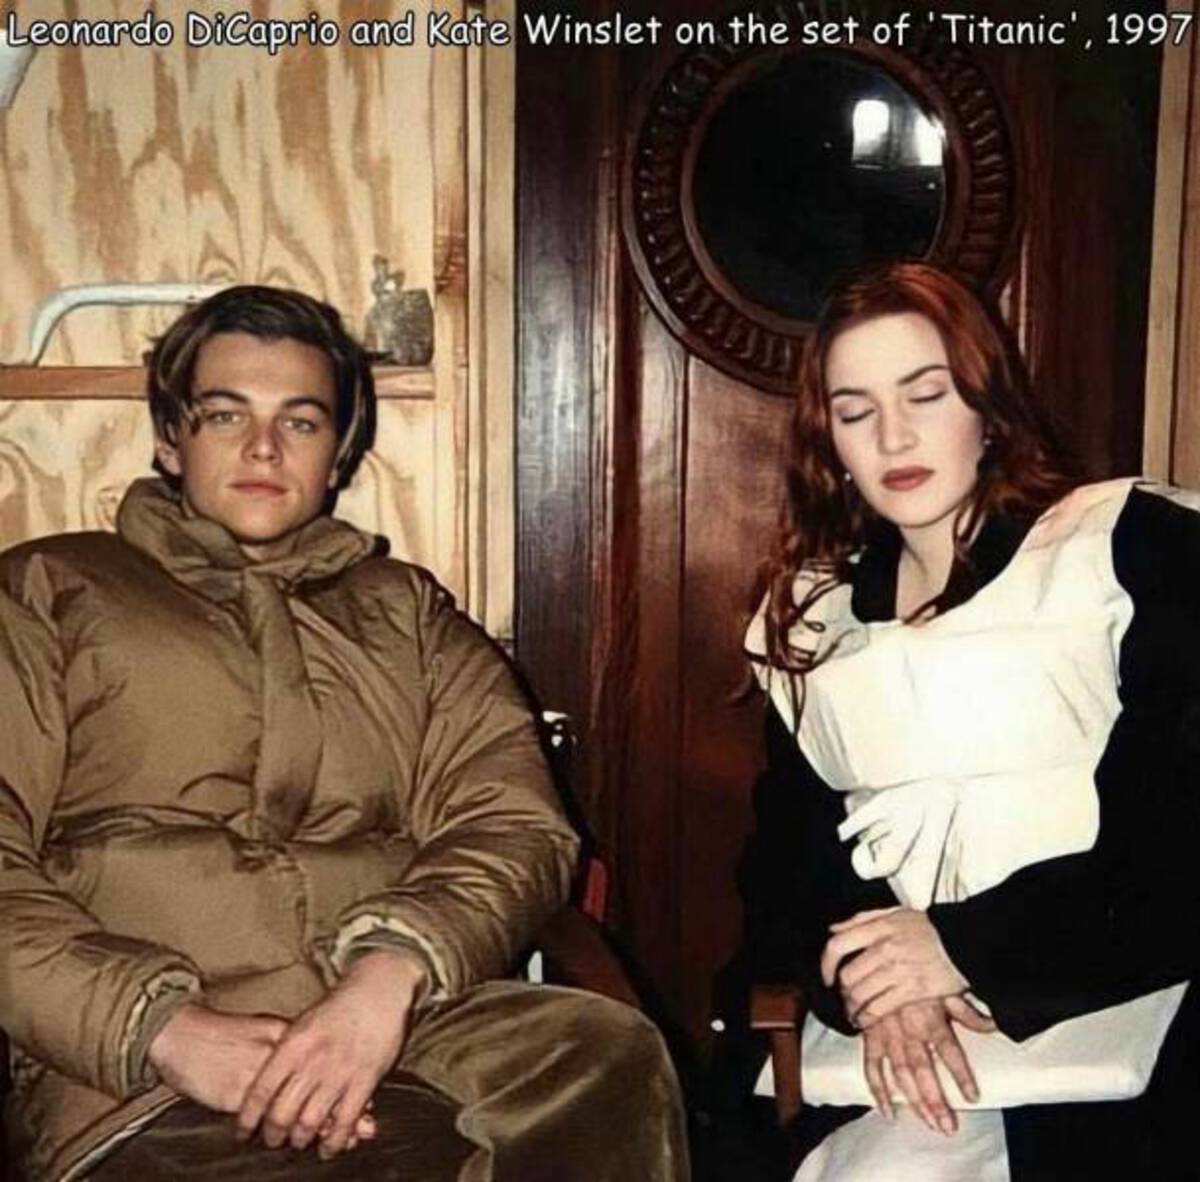 leonardo dicaprio et kate winslet titanic - Leonardo DiCaprio and Kate Winslet on the set of 'Titanic', 1997